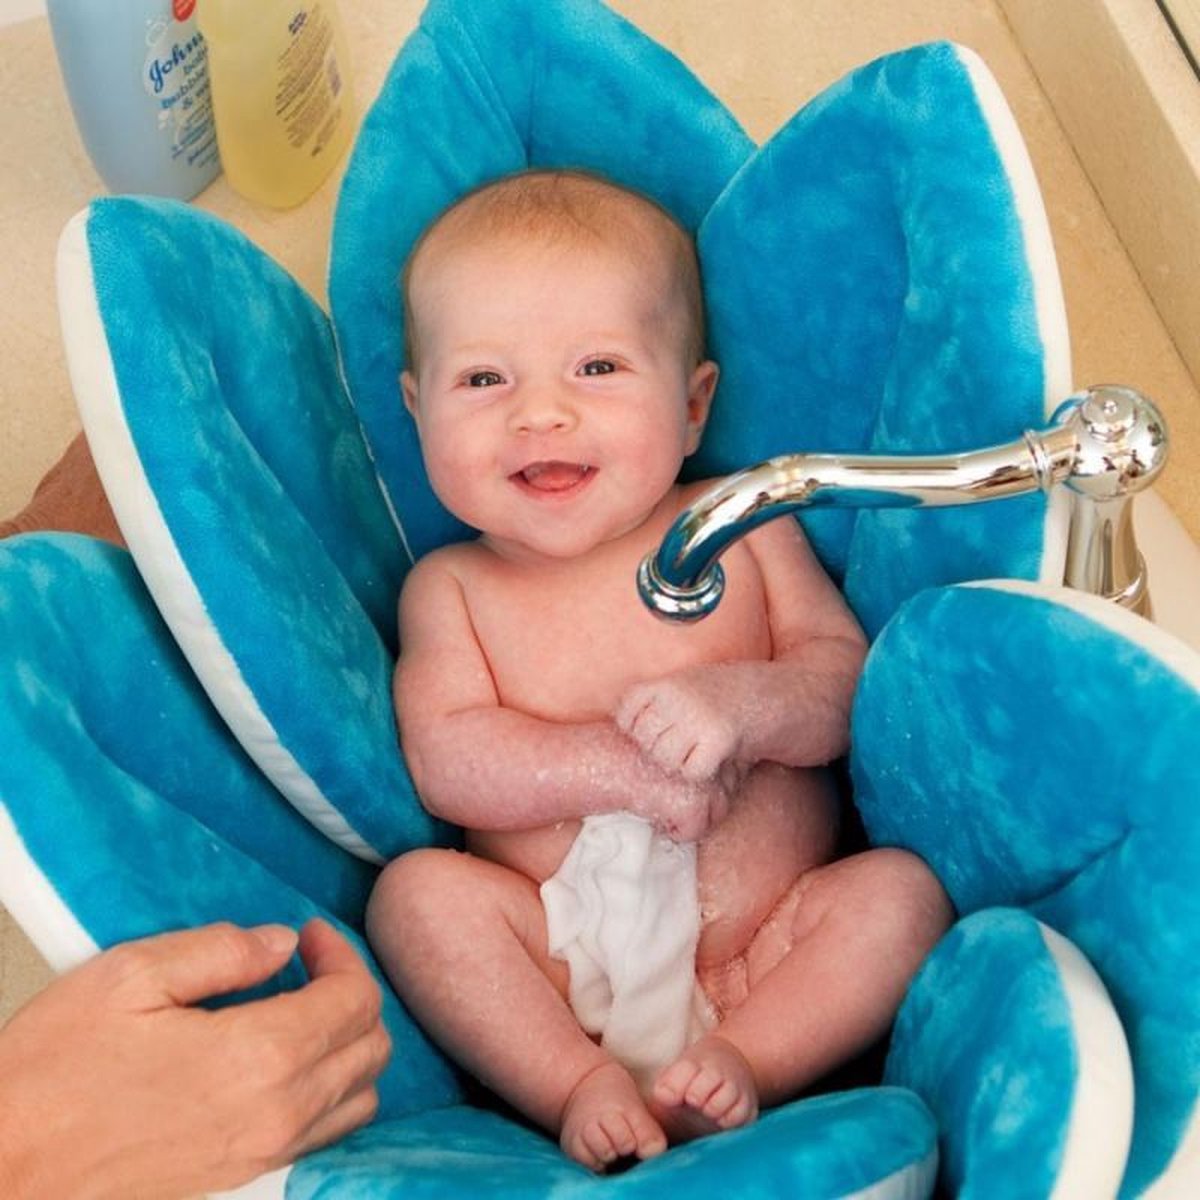 diepte schildpad Verbeteren Blooming Bath Blauw zacht babybad DE ORIGINELE | bol.com